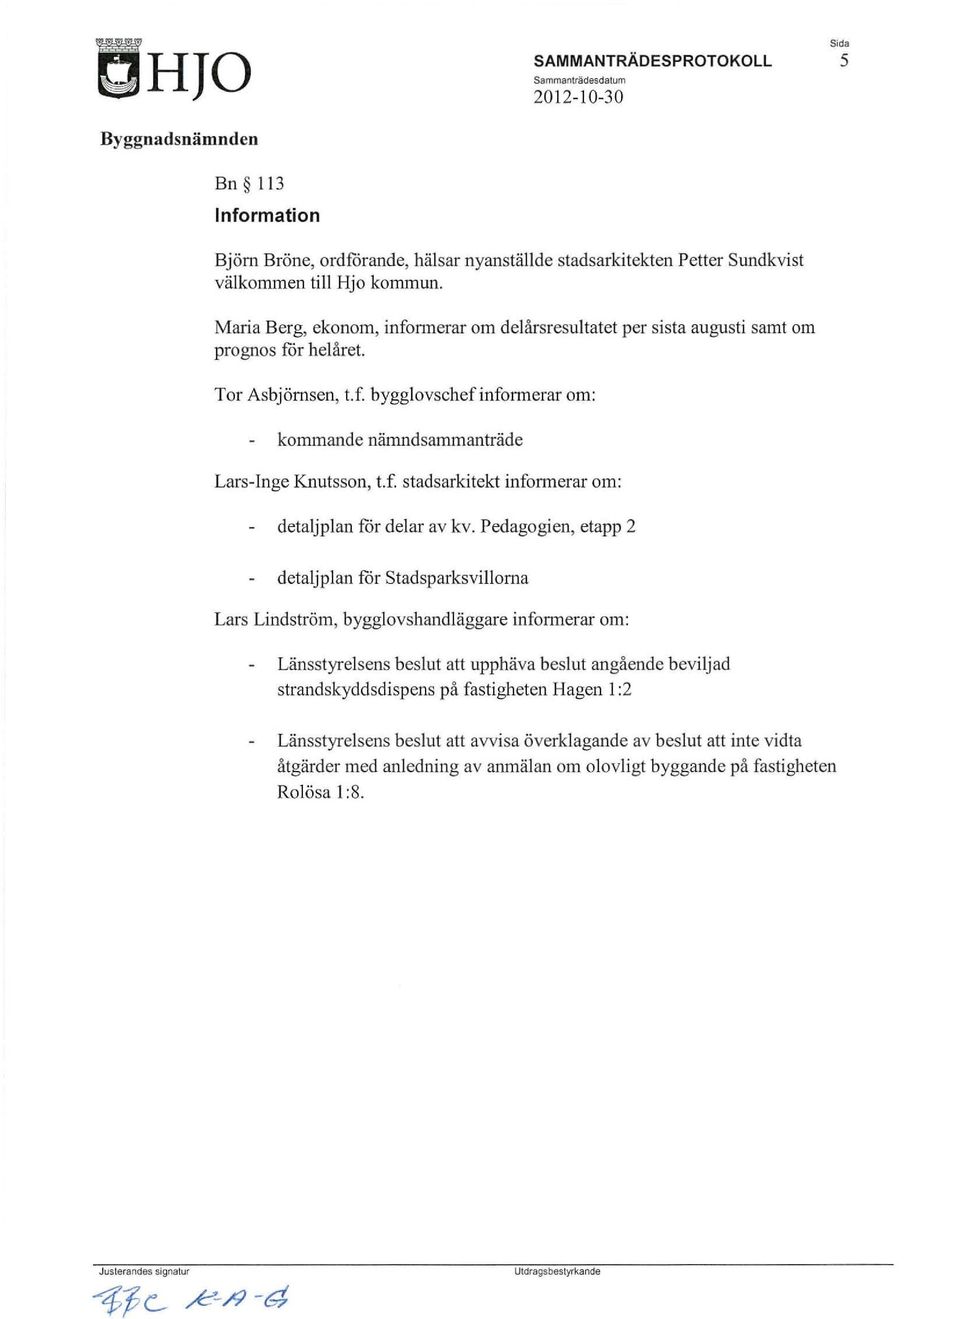 Pedagogien, etapp 2 detaljplan för Stadsparksvillorna Lars Lindström, bygglovshandläggare infonnerar om: Länsstyrelsens beslut att upphäva beslut angående beviljad strandskyddsdispens på fastigheten